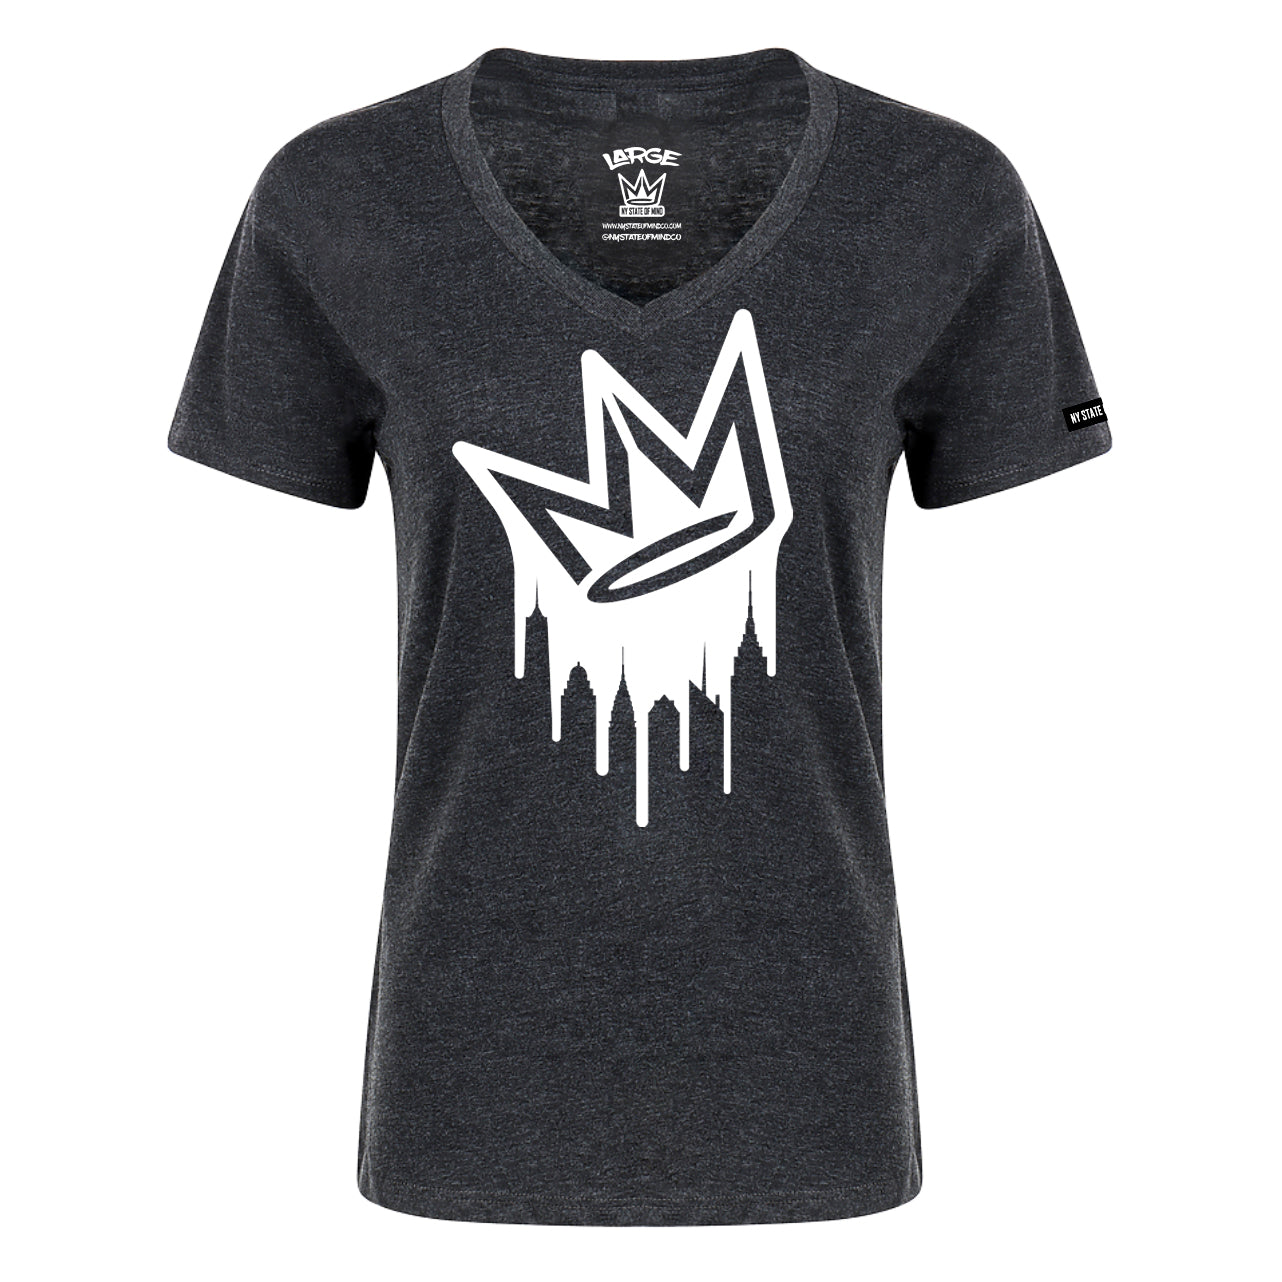 Dripping Crown Logo Ladies T-Shirt